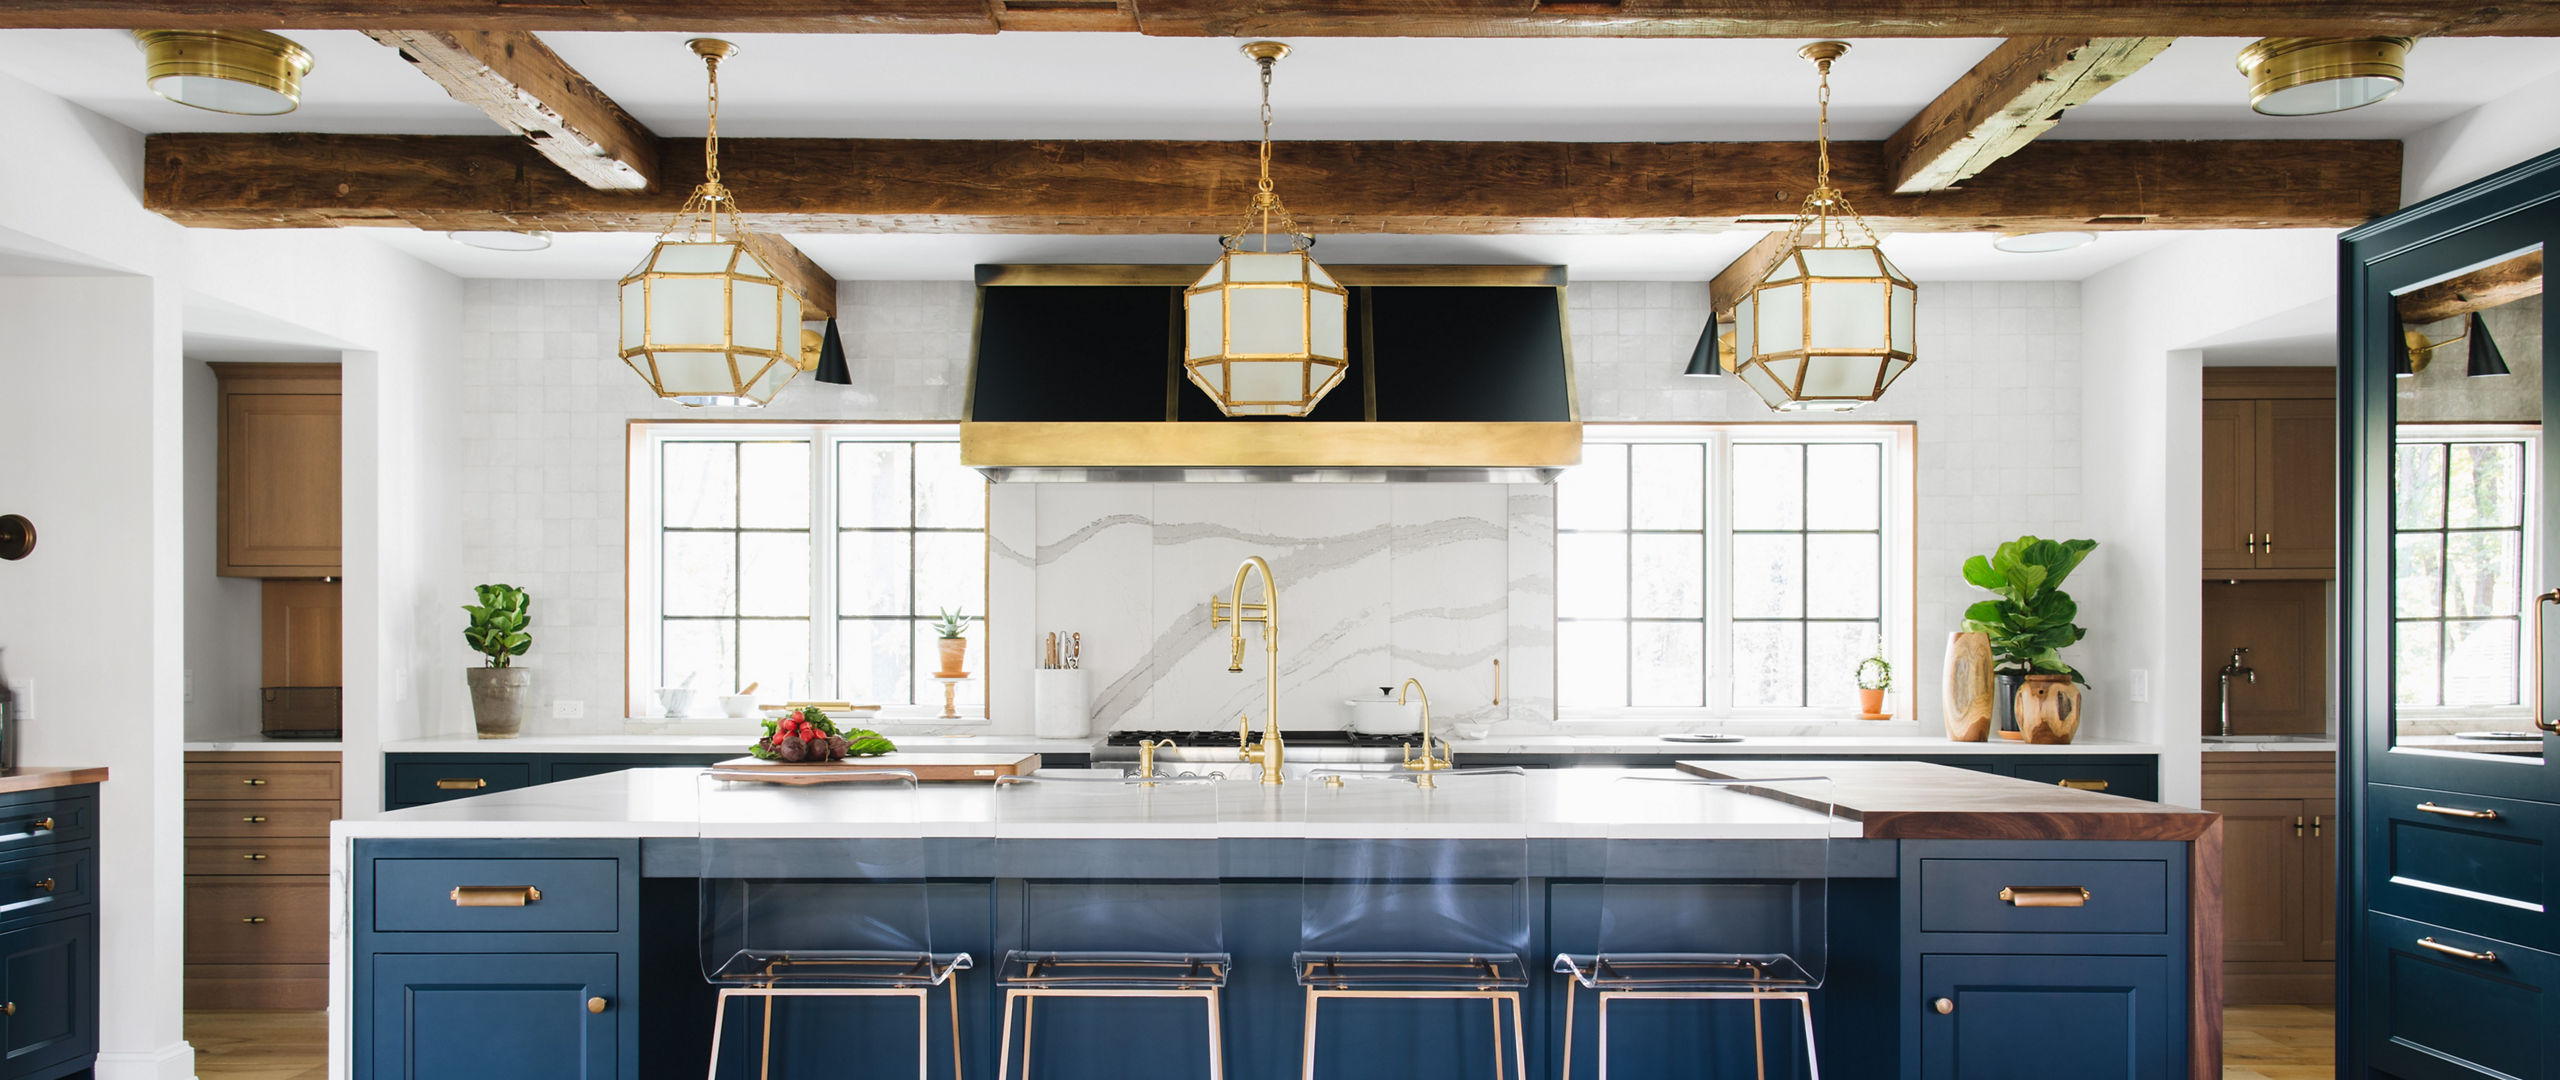 10 Inspiring Navy & White Kitchen Design Ideas